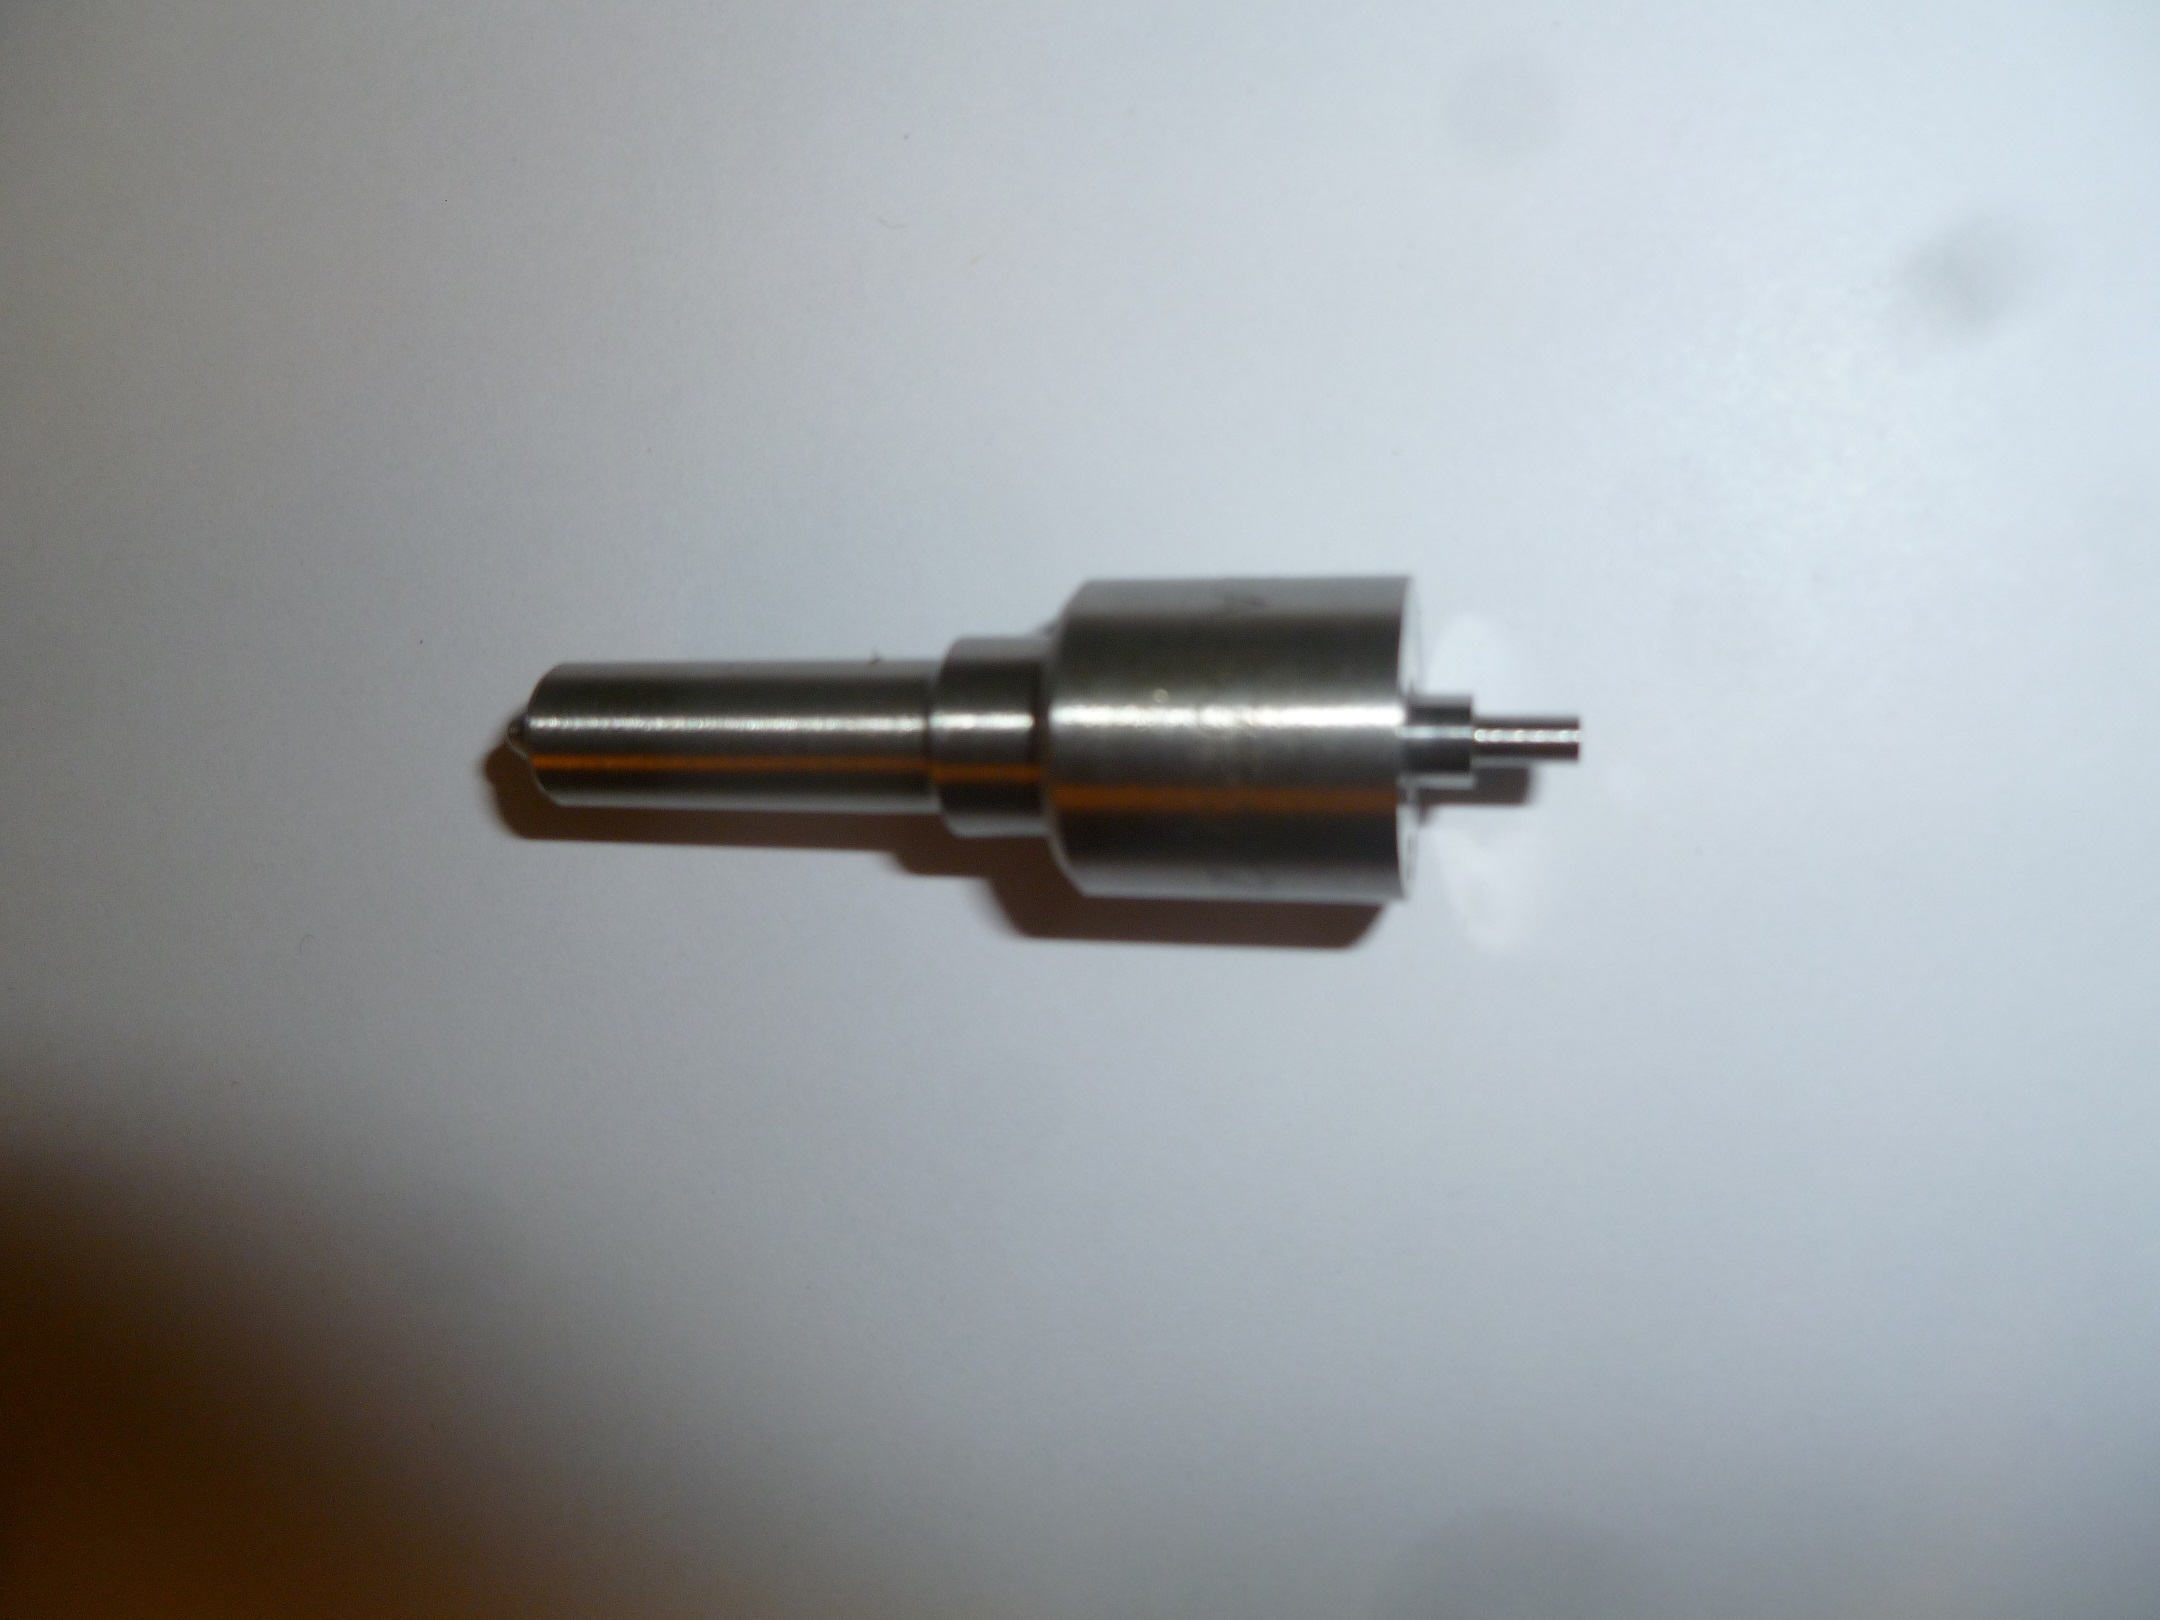 Распылитель форсунки (L=48 mm) Ricardo R6105AZLDS1 /Nozzle (R320101; DSLA 153P522 B)